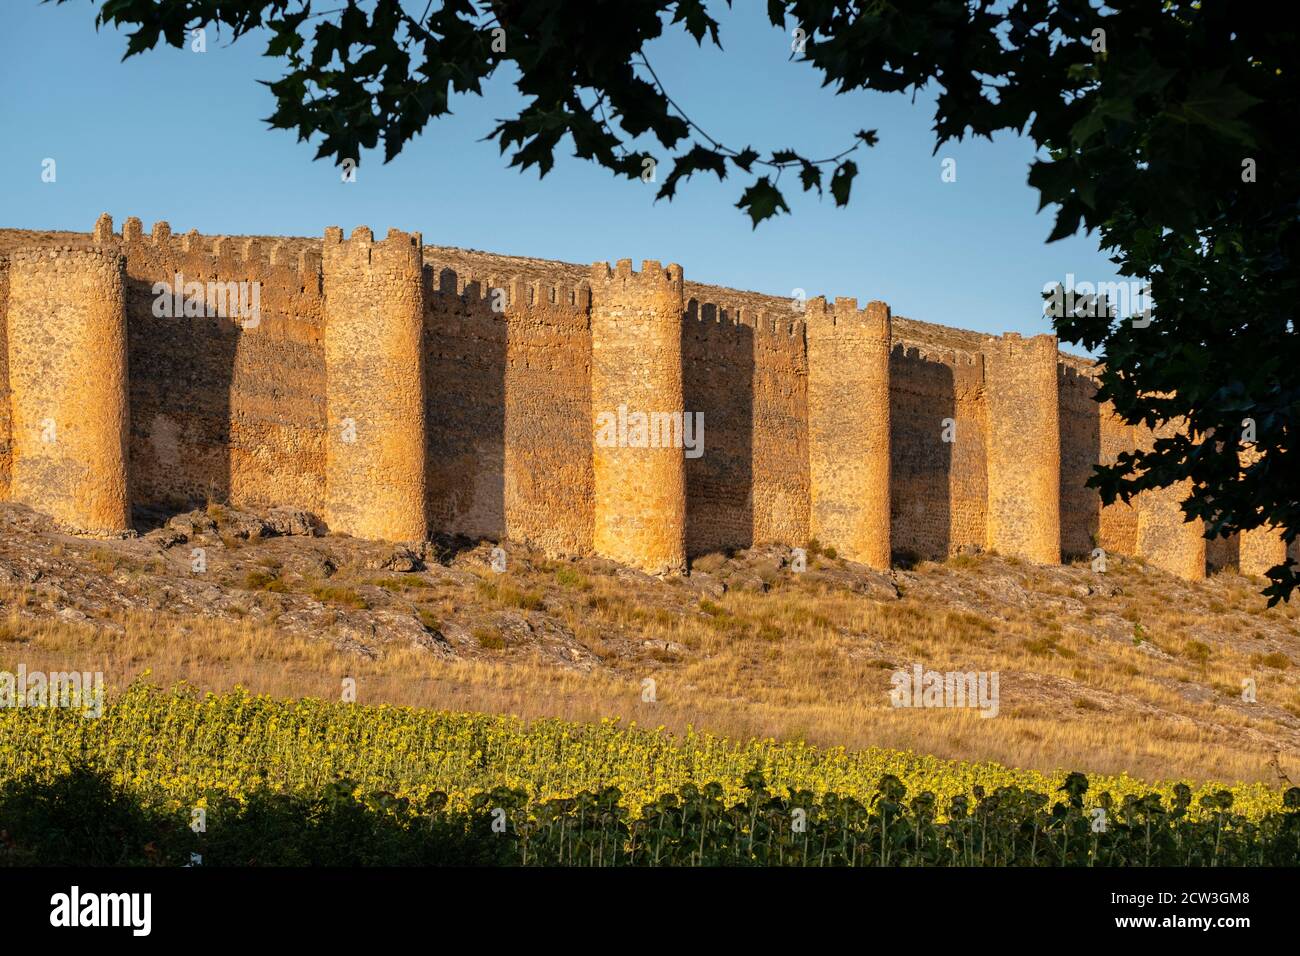 cerca vieja, siglos X-XII, castillo del siglo XV, Berlanga de Duero, Soria,  comunidad autónoma de Castilla y León, Spain, Europe Stock Photo